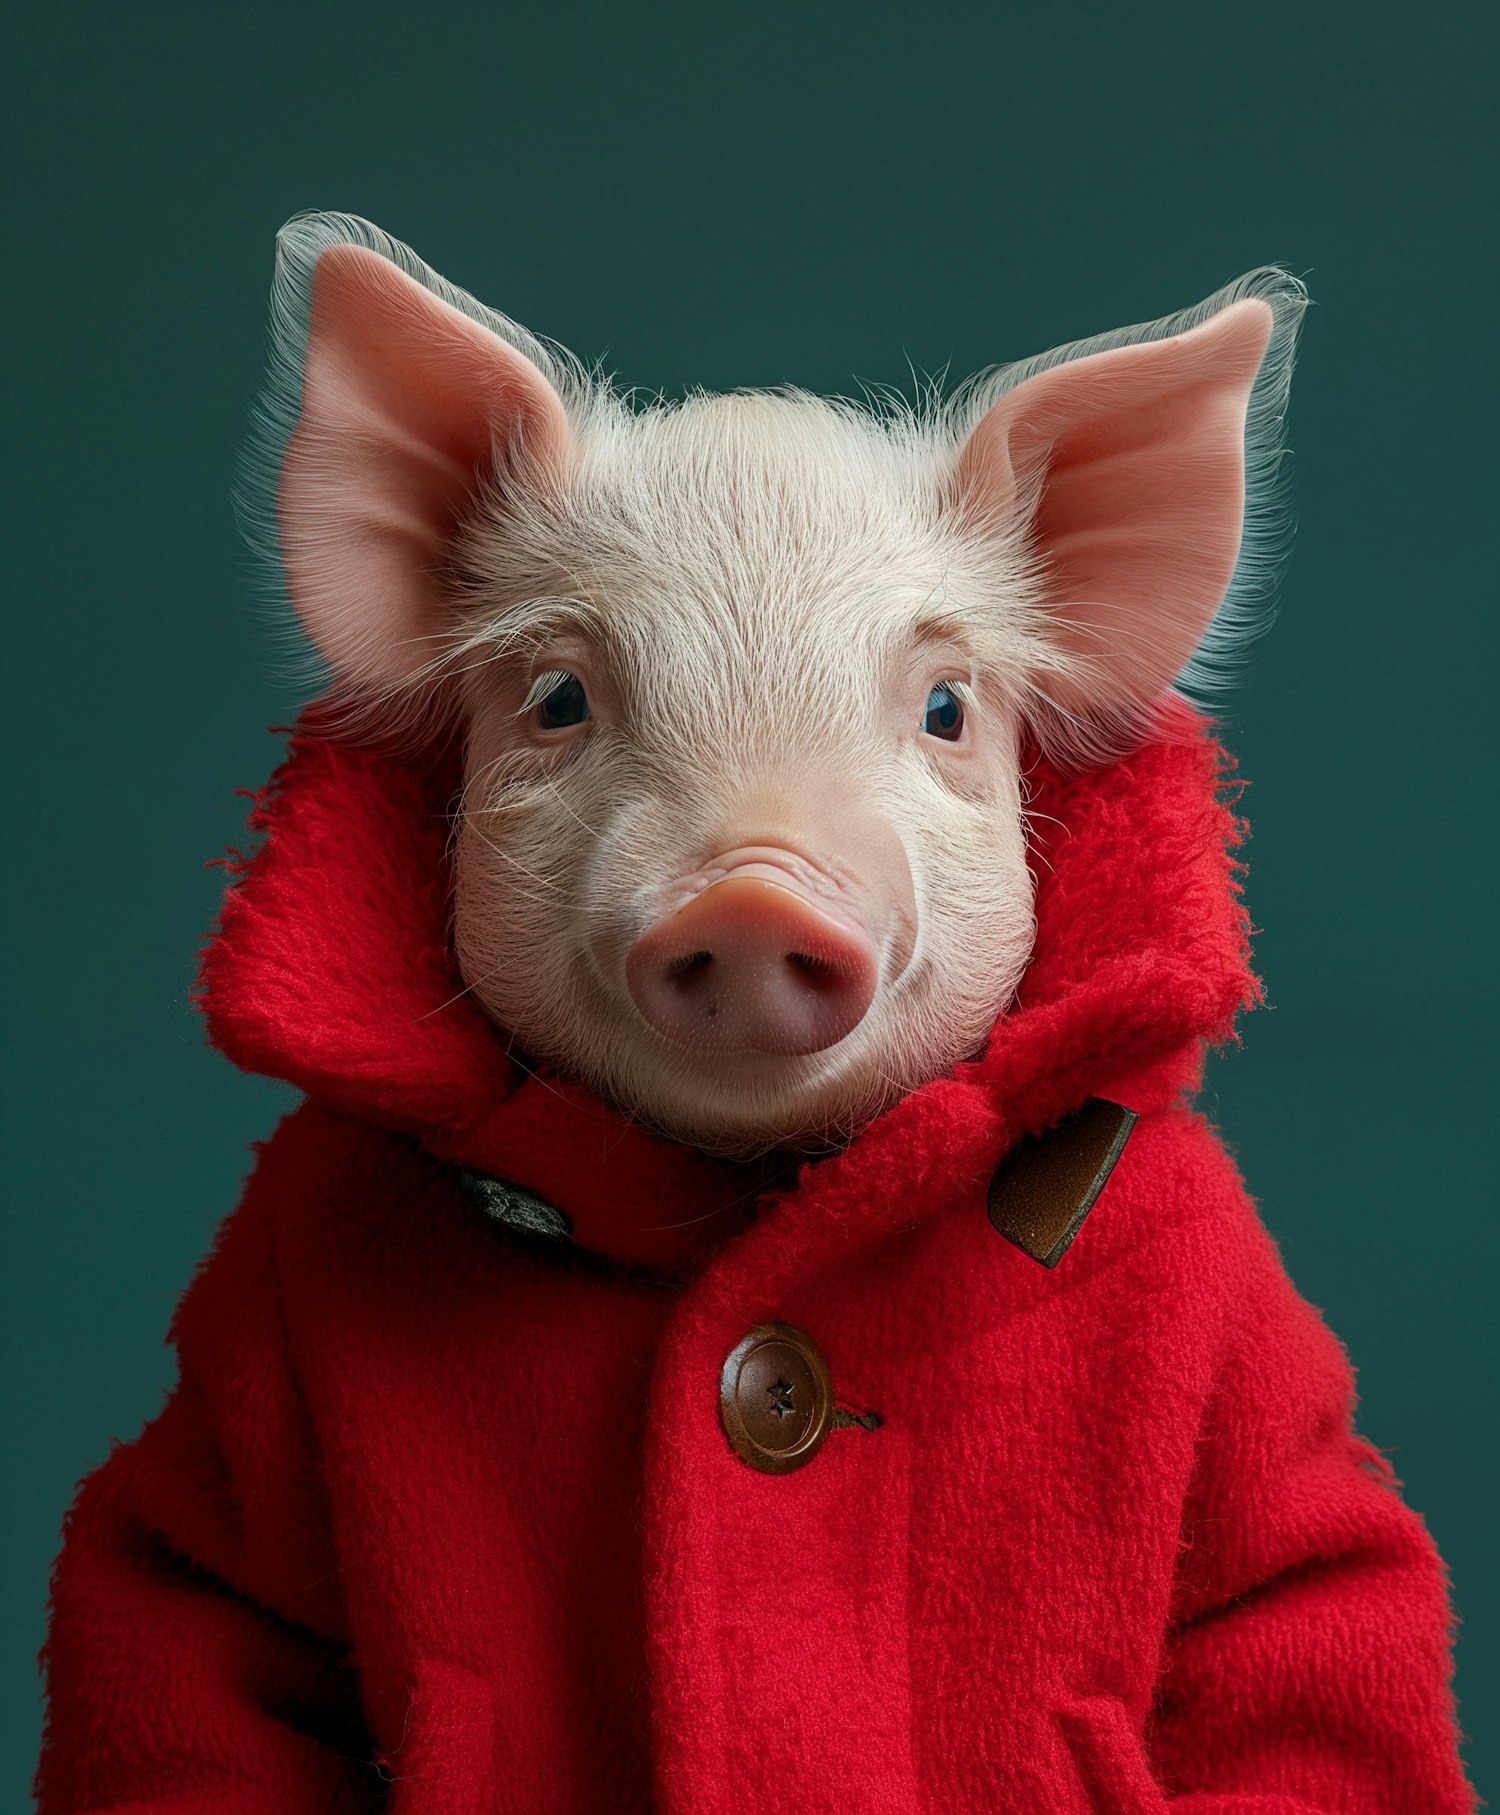 Anthropomorphic Pig in Red Coat